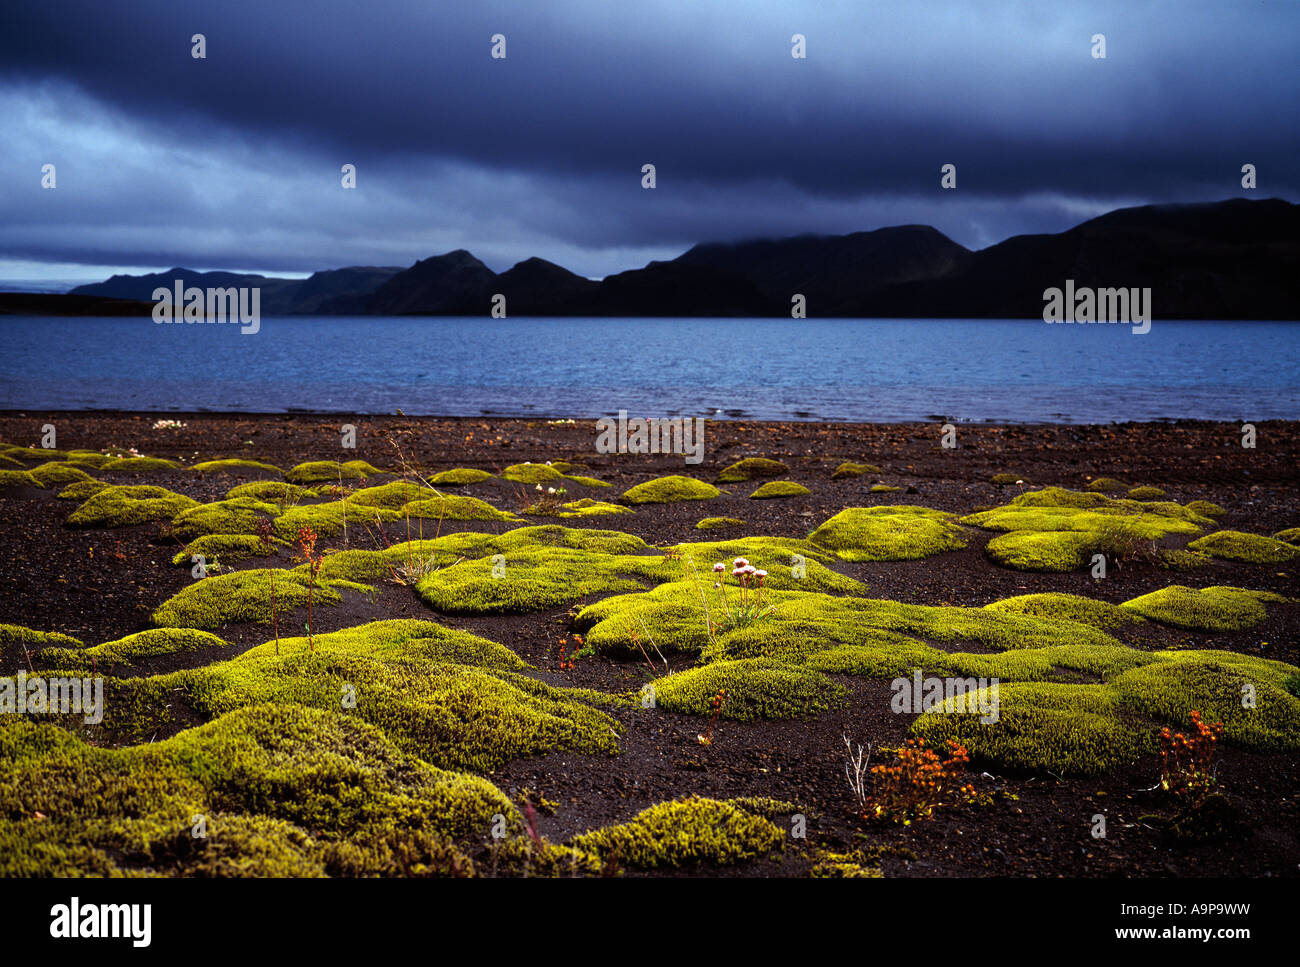 Moss et beau paysage à Langisjor dans les hautes terres d'Islande Banque D'Images